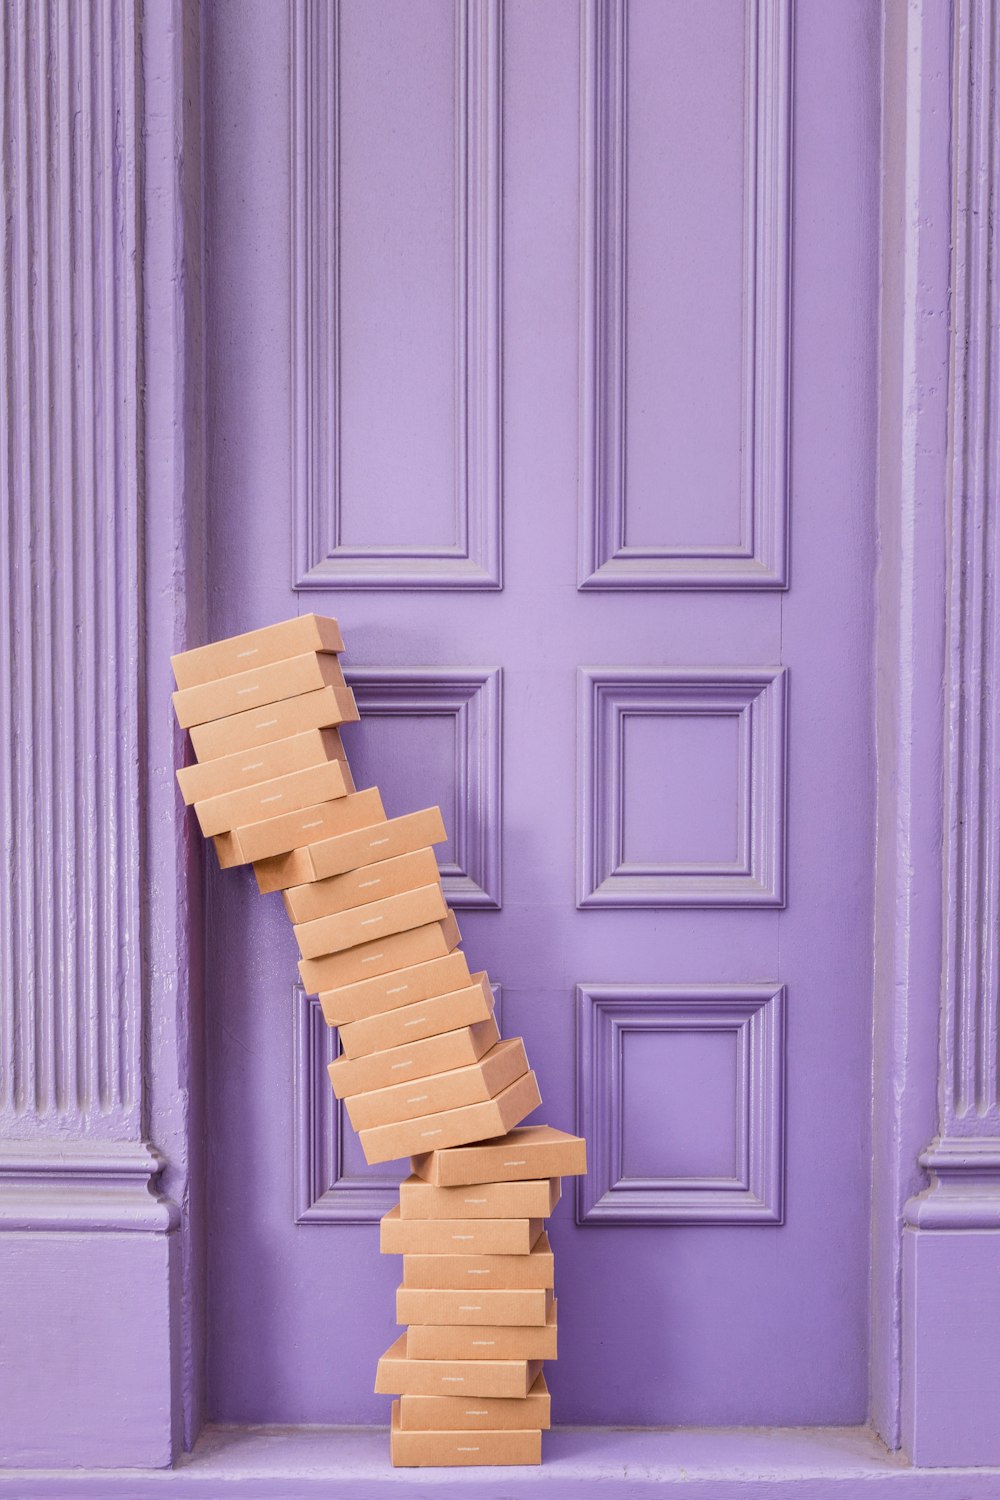 mucchio di scatole marroni accanto al muro di legno viola